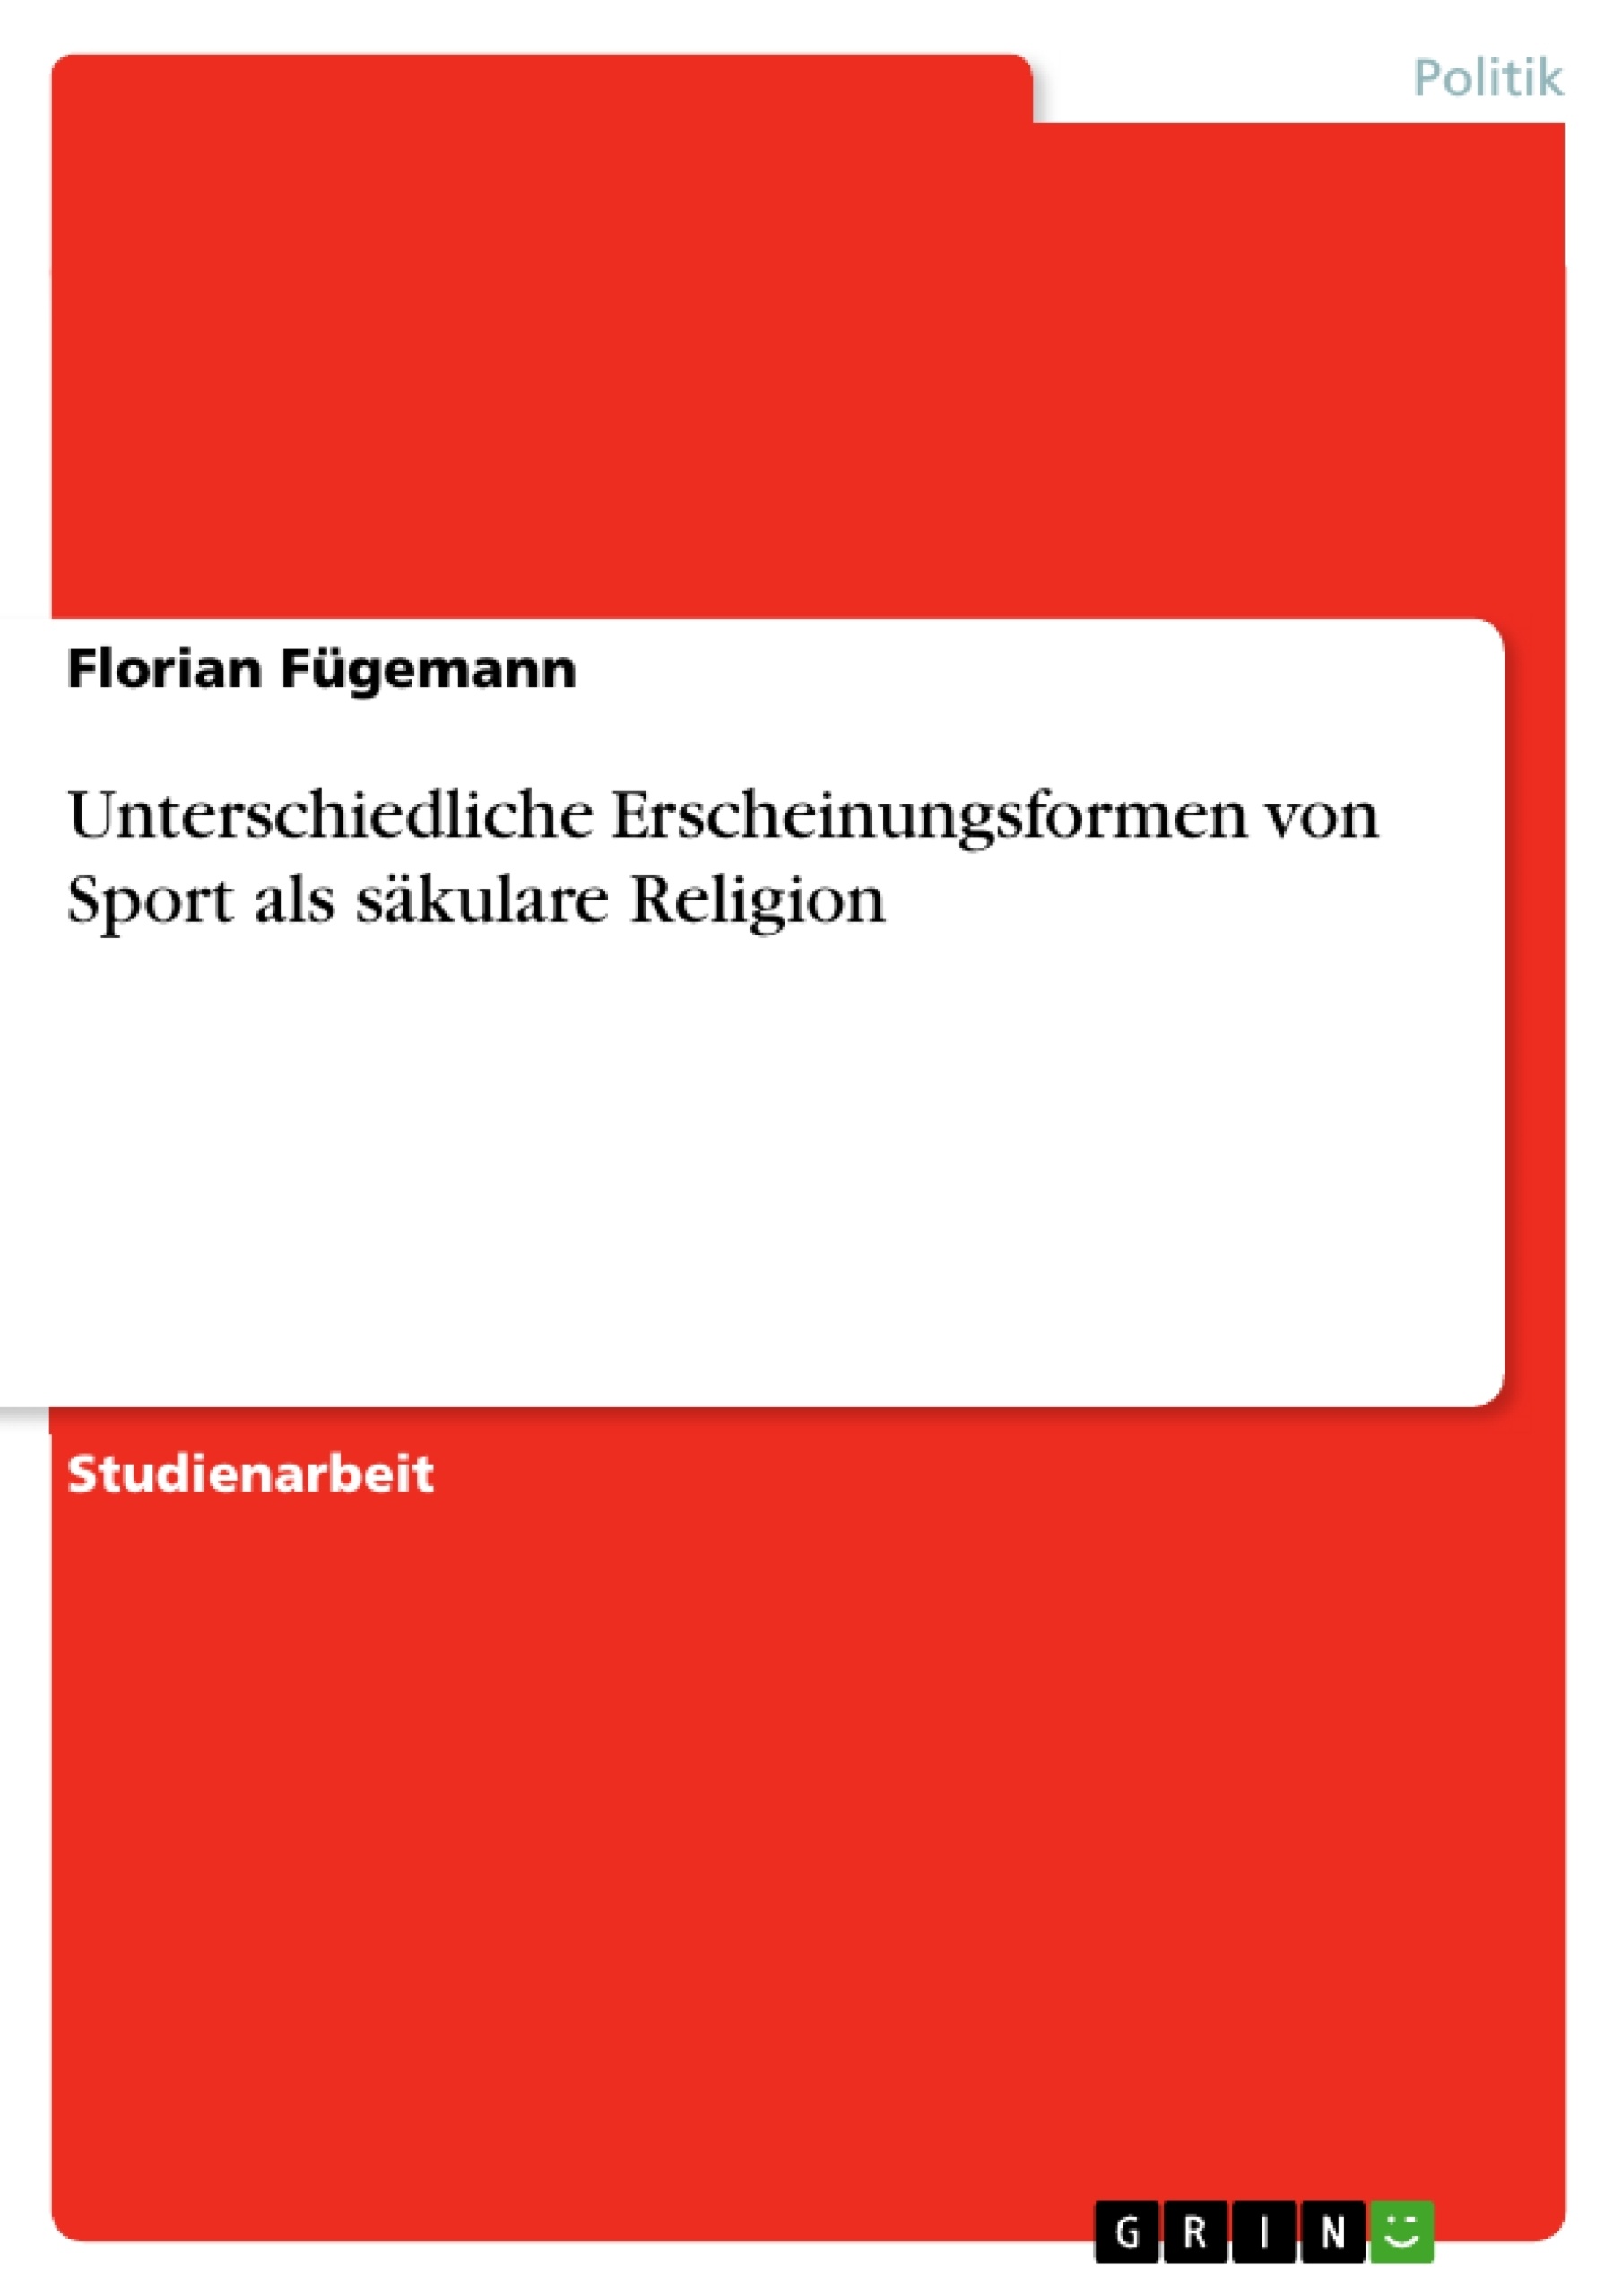 Title: Unterschiedliche Erscheinungsformen von Sport als säkulare Religion